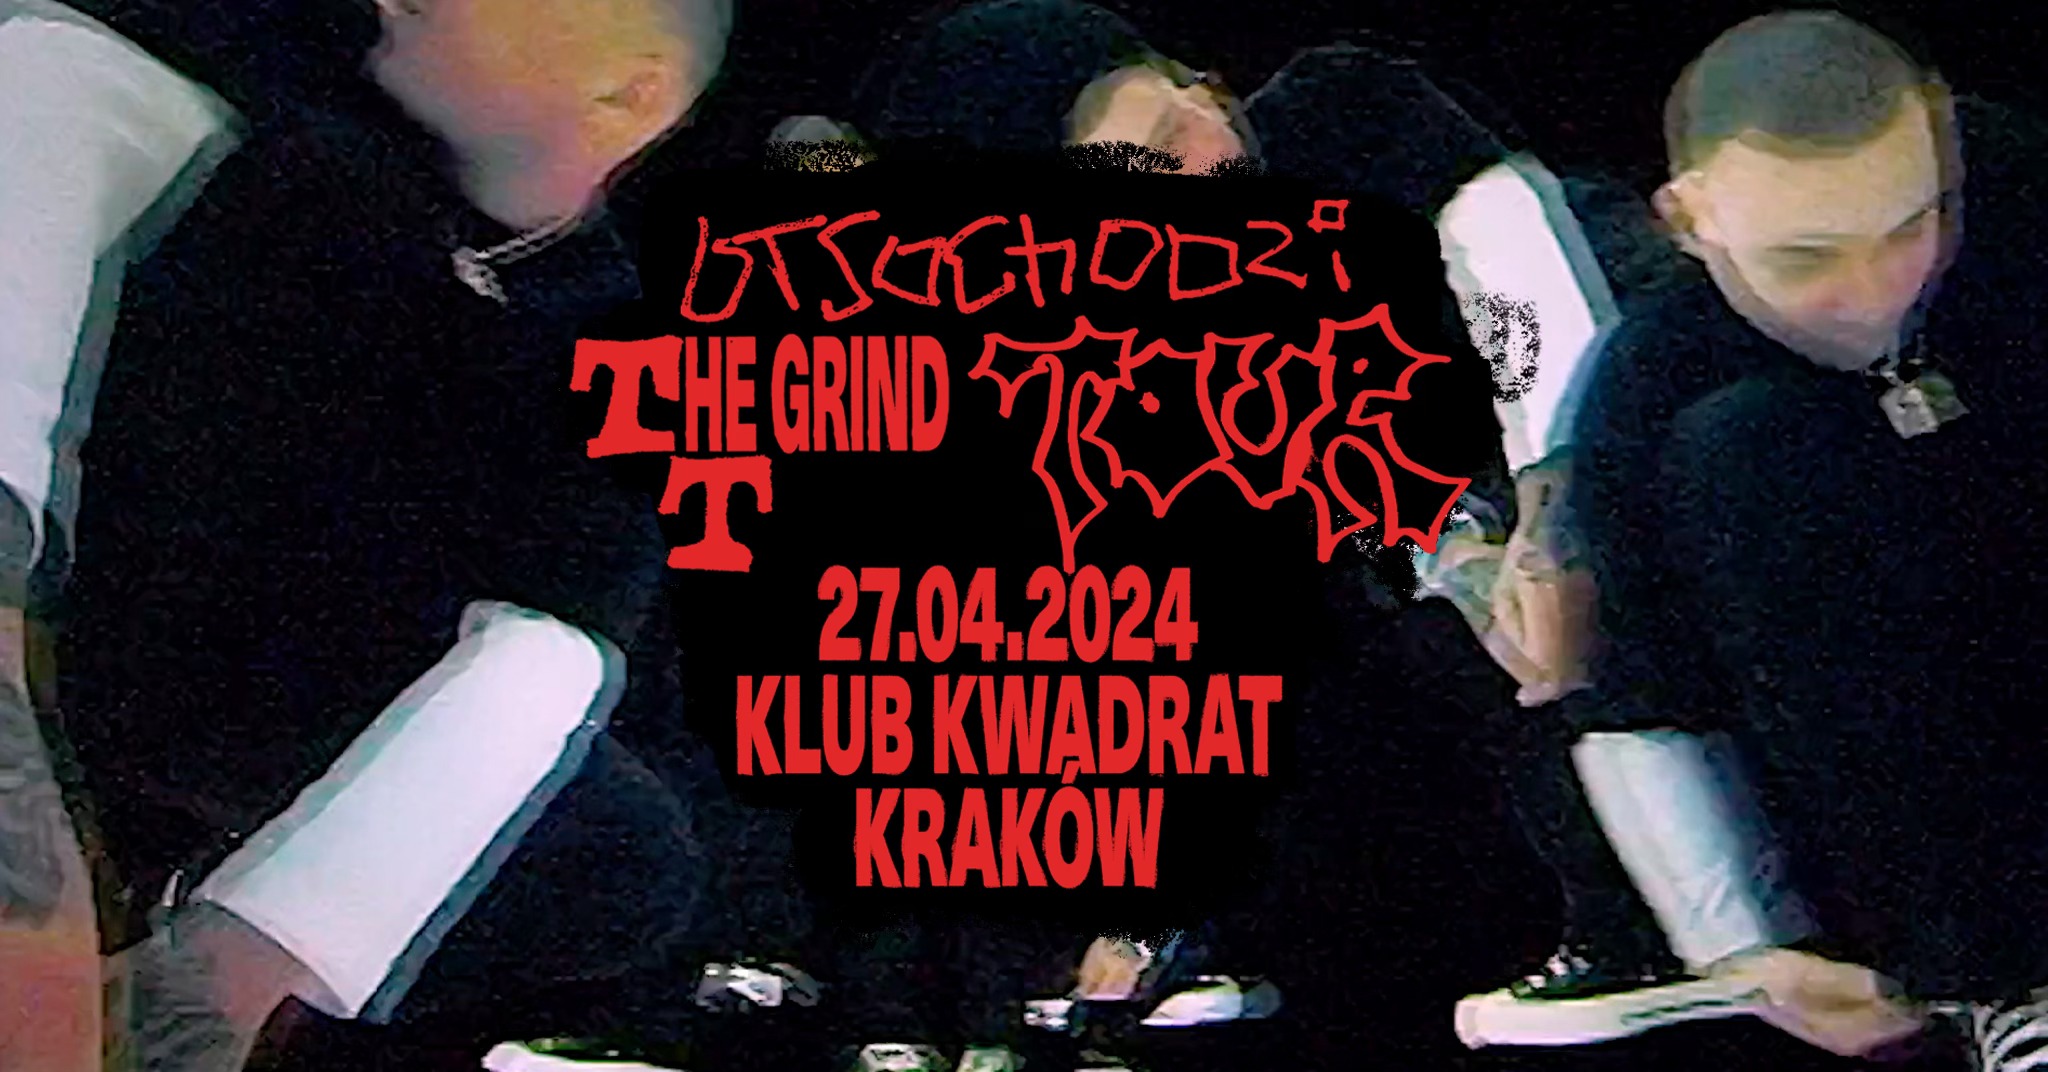 Otsochodzi - TTHE GRIND TOUR